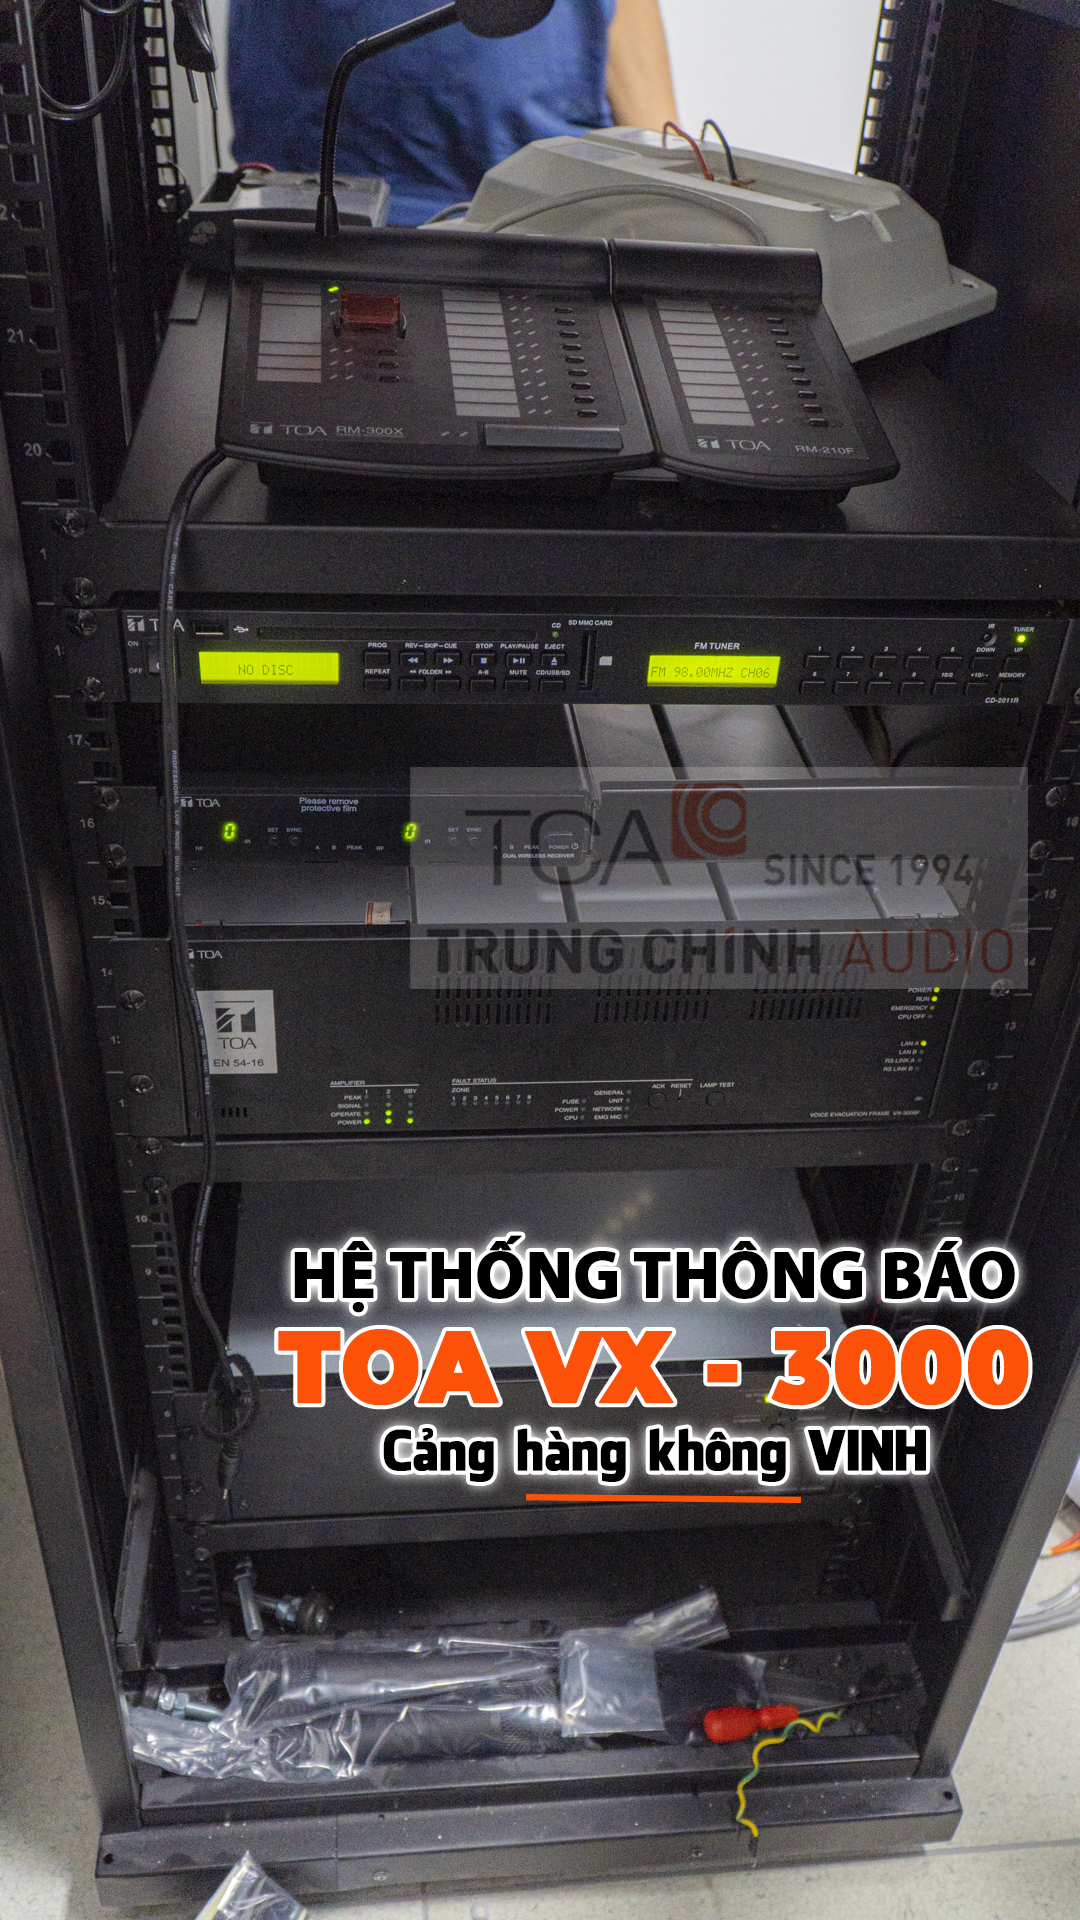 he-thong-thong-bao-toa-vx-3000